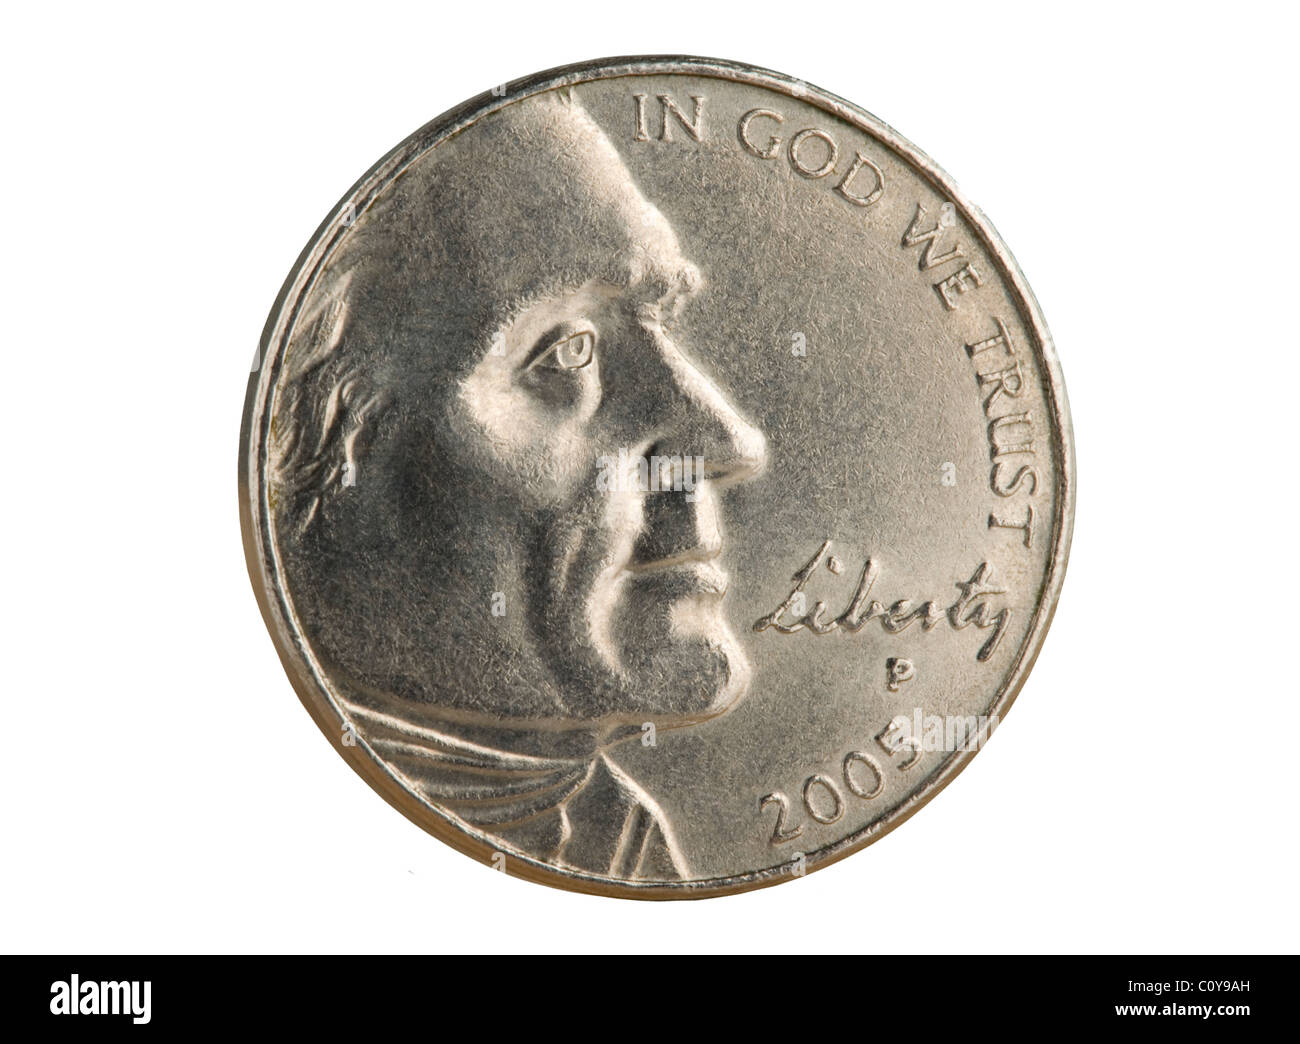 2005 U.S. Nickel Münze. Der Nennwert von 5 Cent ist jetzt kleiner als der Wert der Metalle in der Münze. Stockfoto